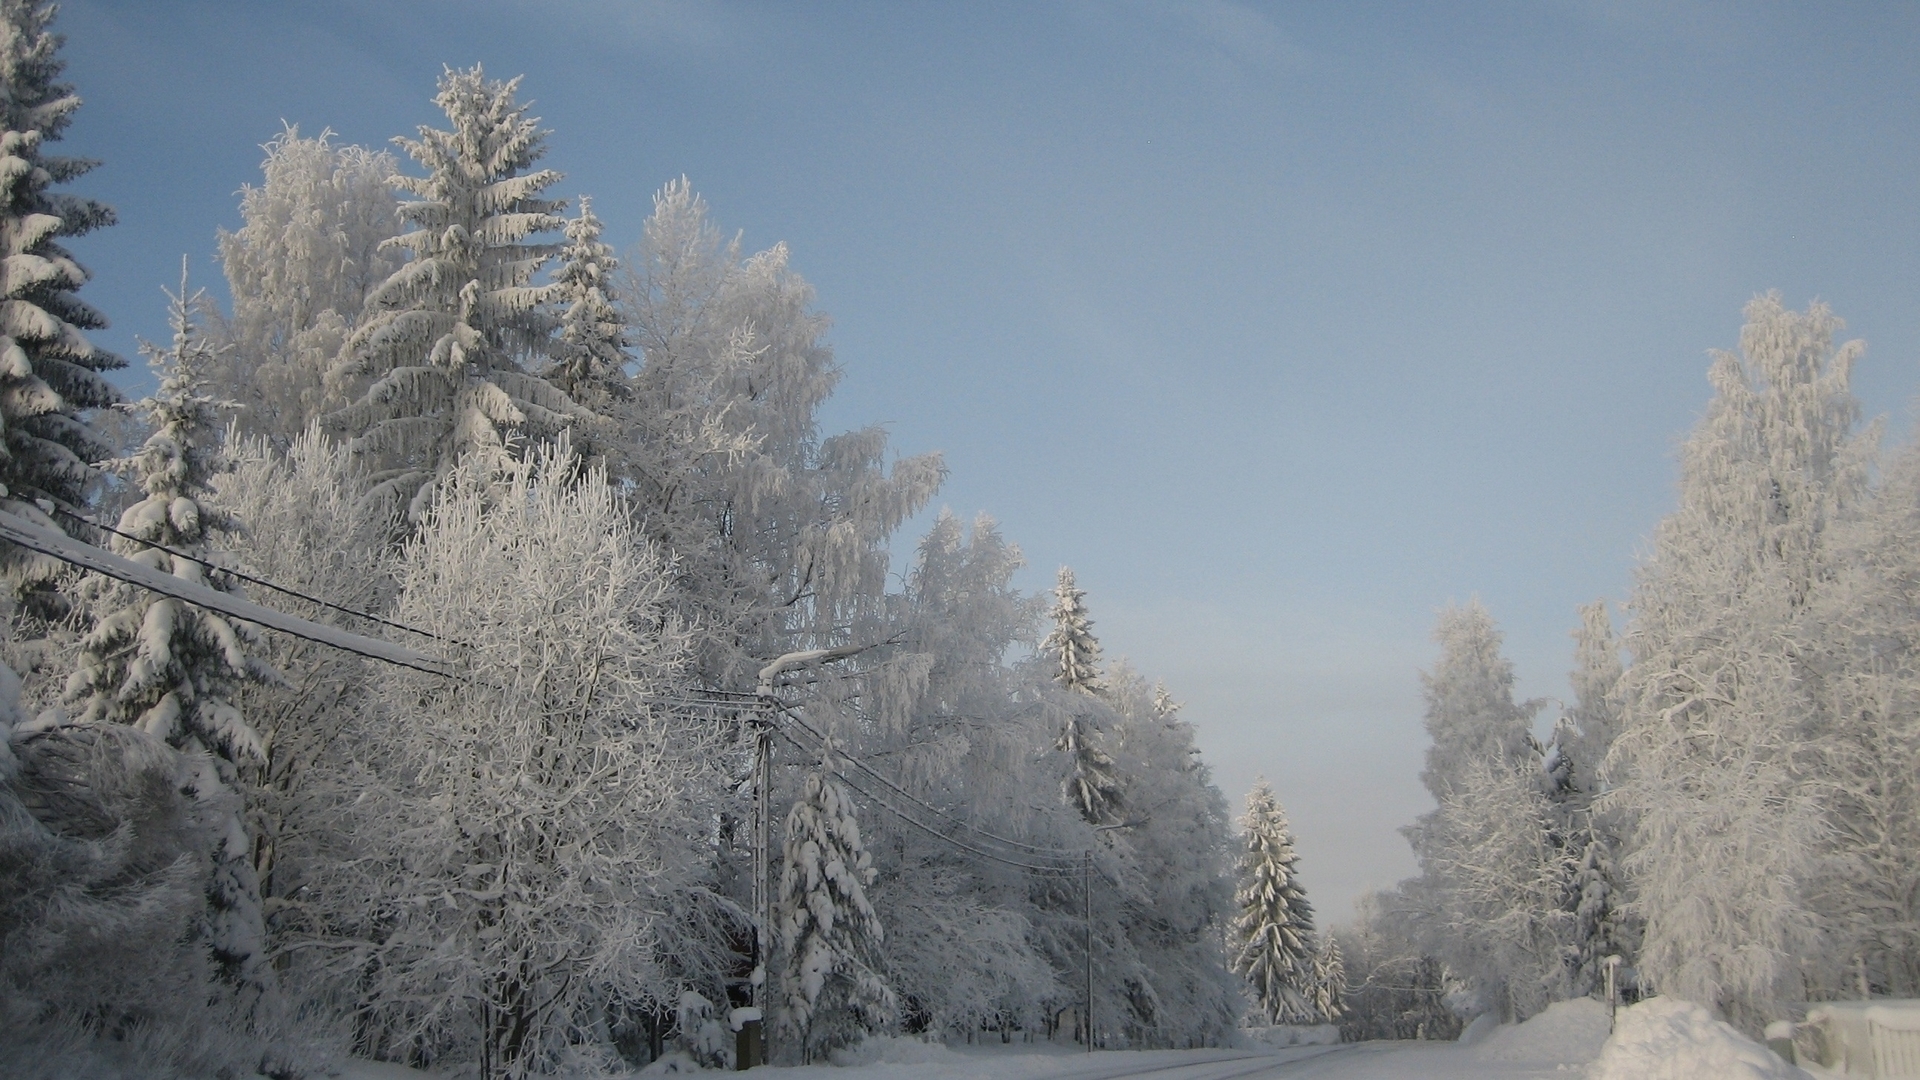 Скачать обои бесплатно Зима, Снег, Дерево, Фотографии картинка на рабочий стол ПК